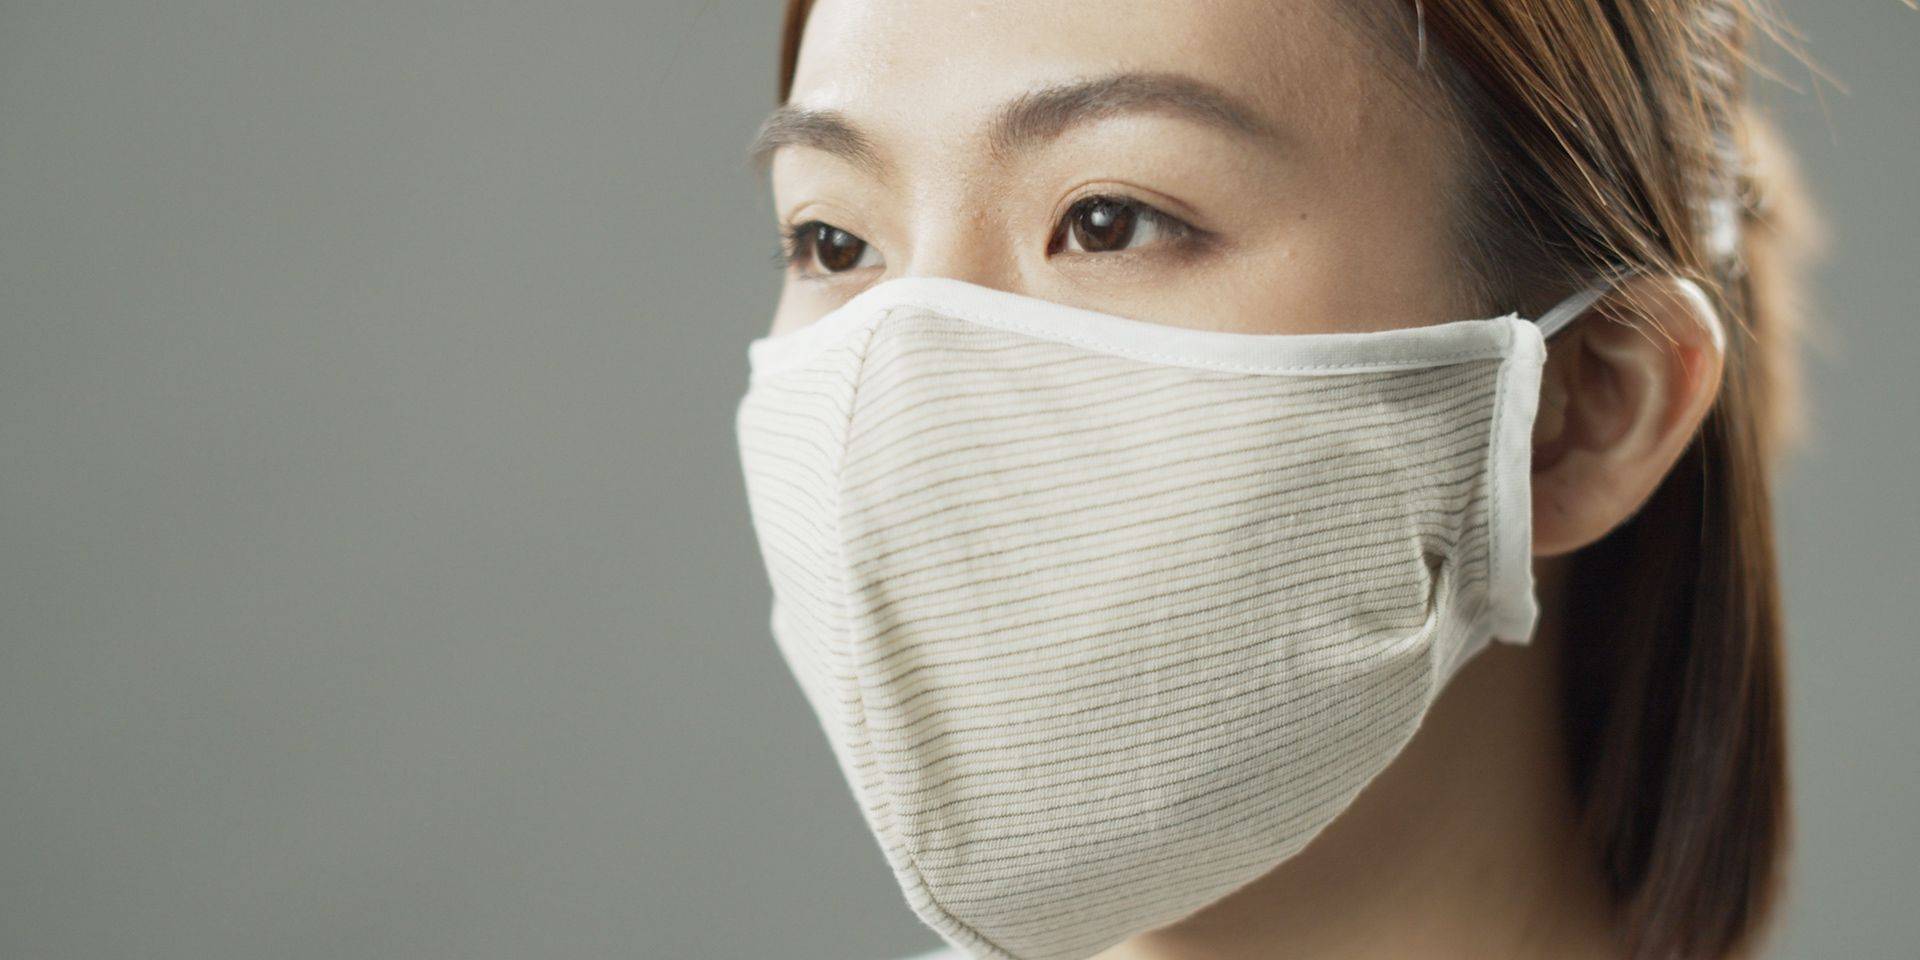 Free Reusable Masks in Hong Kong